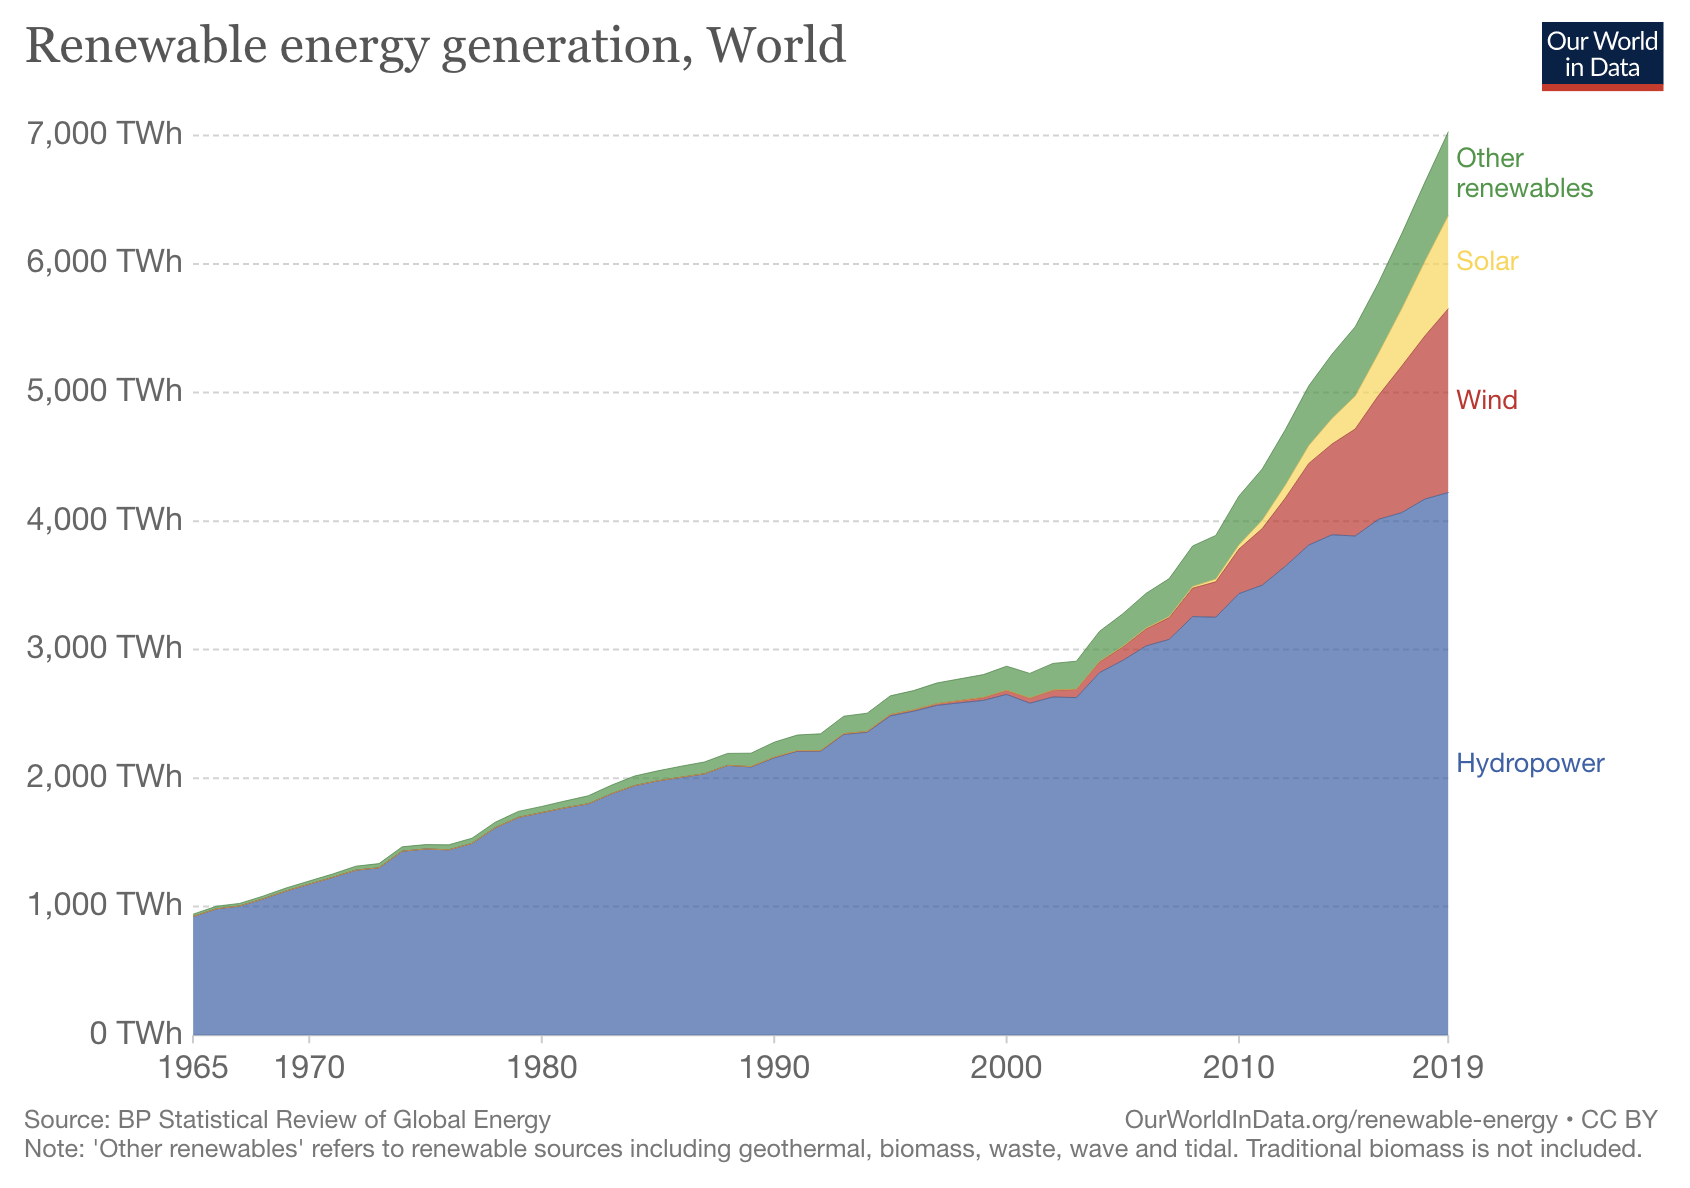 Global renewable energy generation